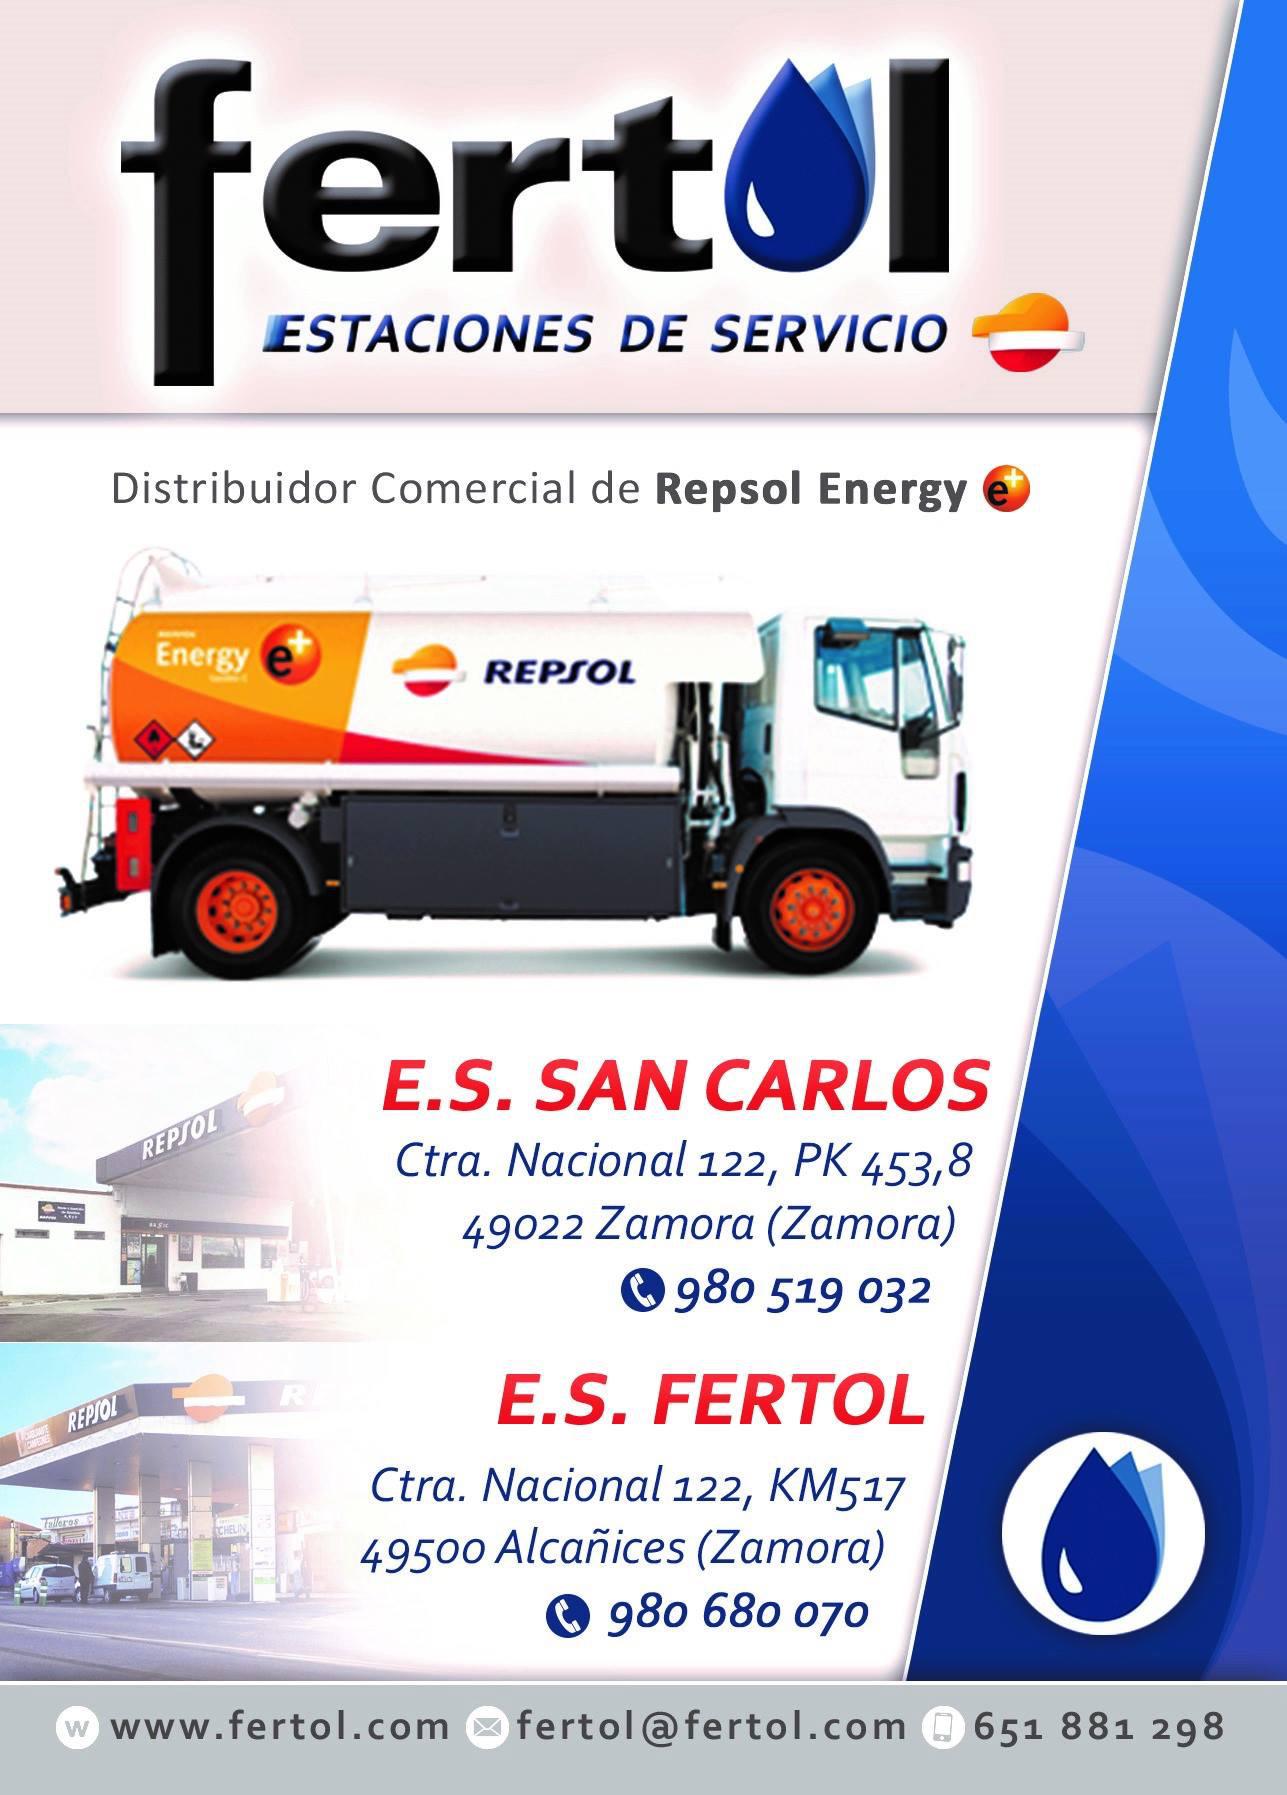 Images Estacion Servicio Fertol SAN CARLOS